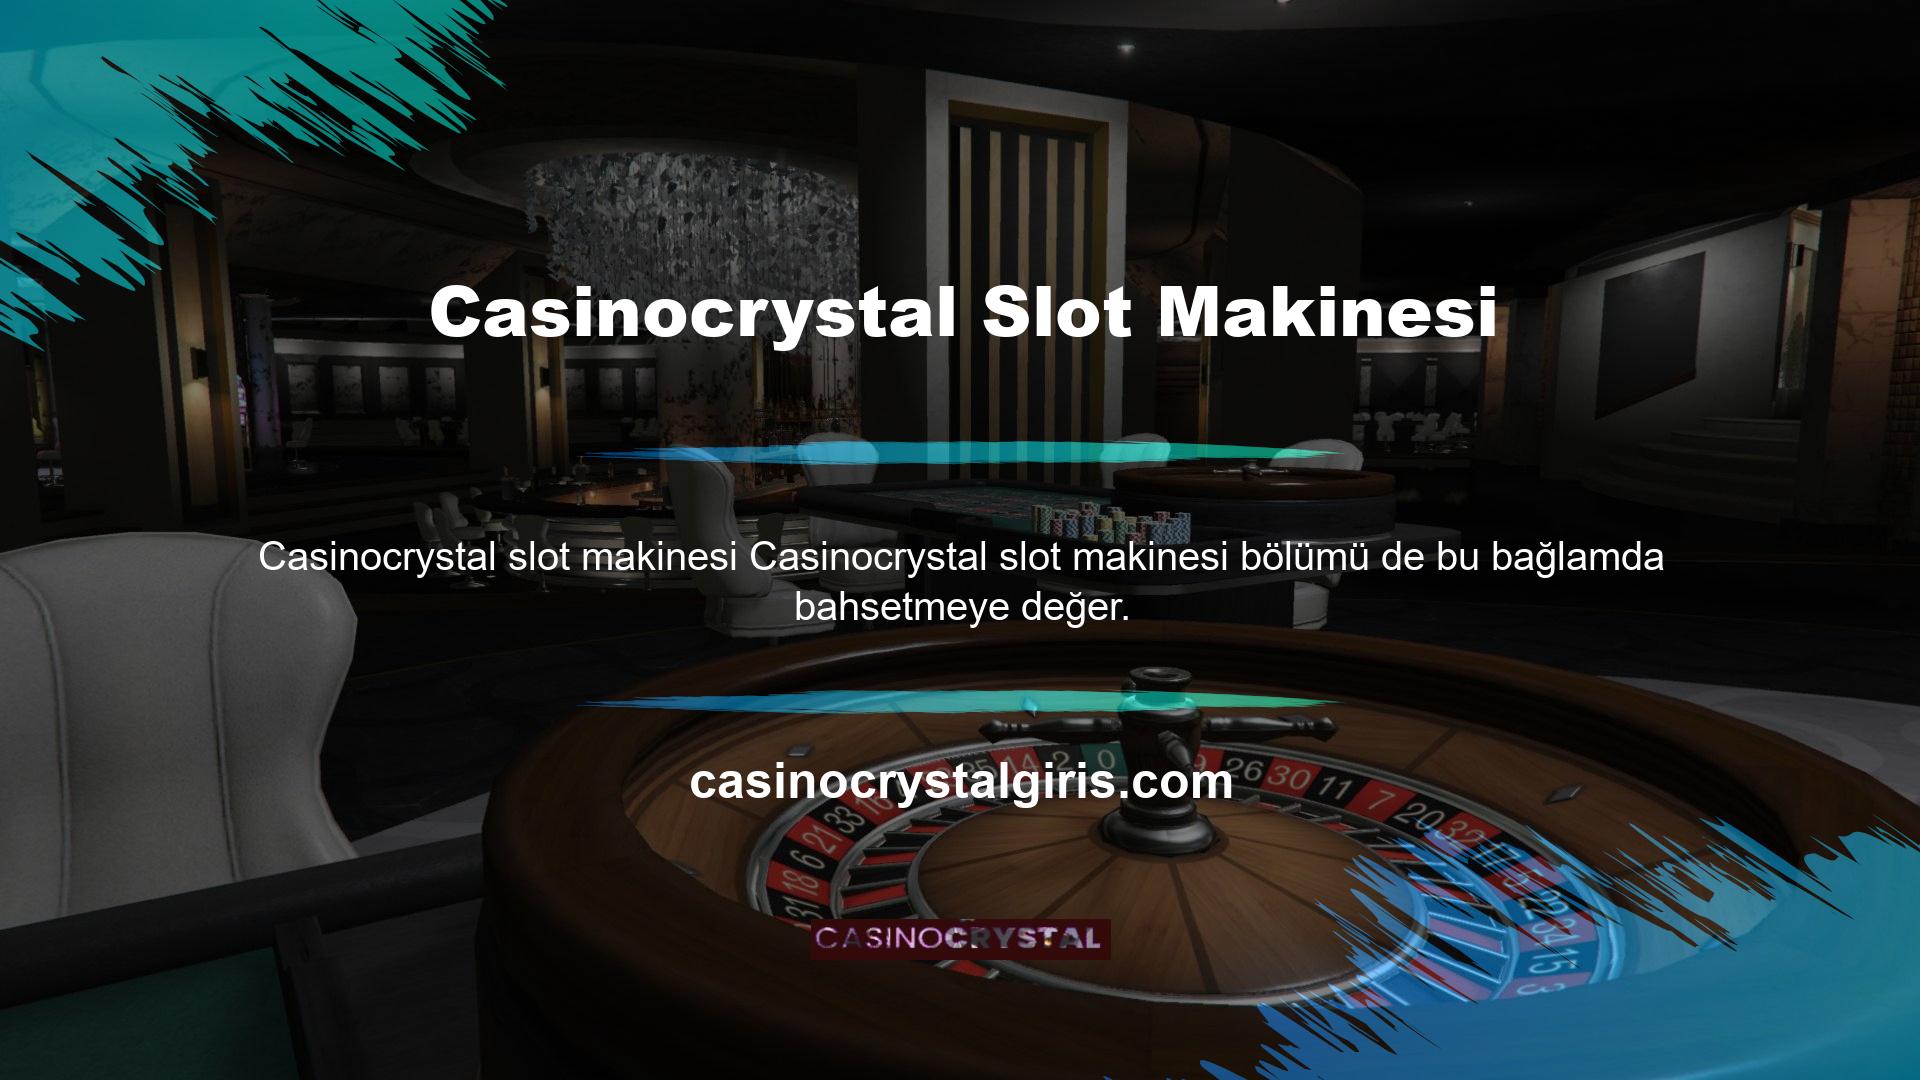 Facebook'ta Casinocrystal Kalesi'ni ziyaret edin